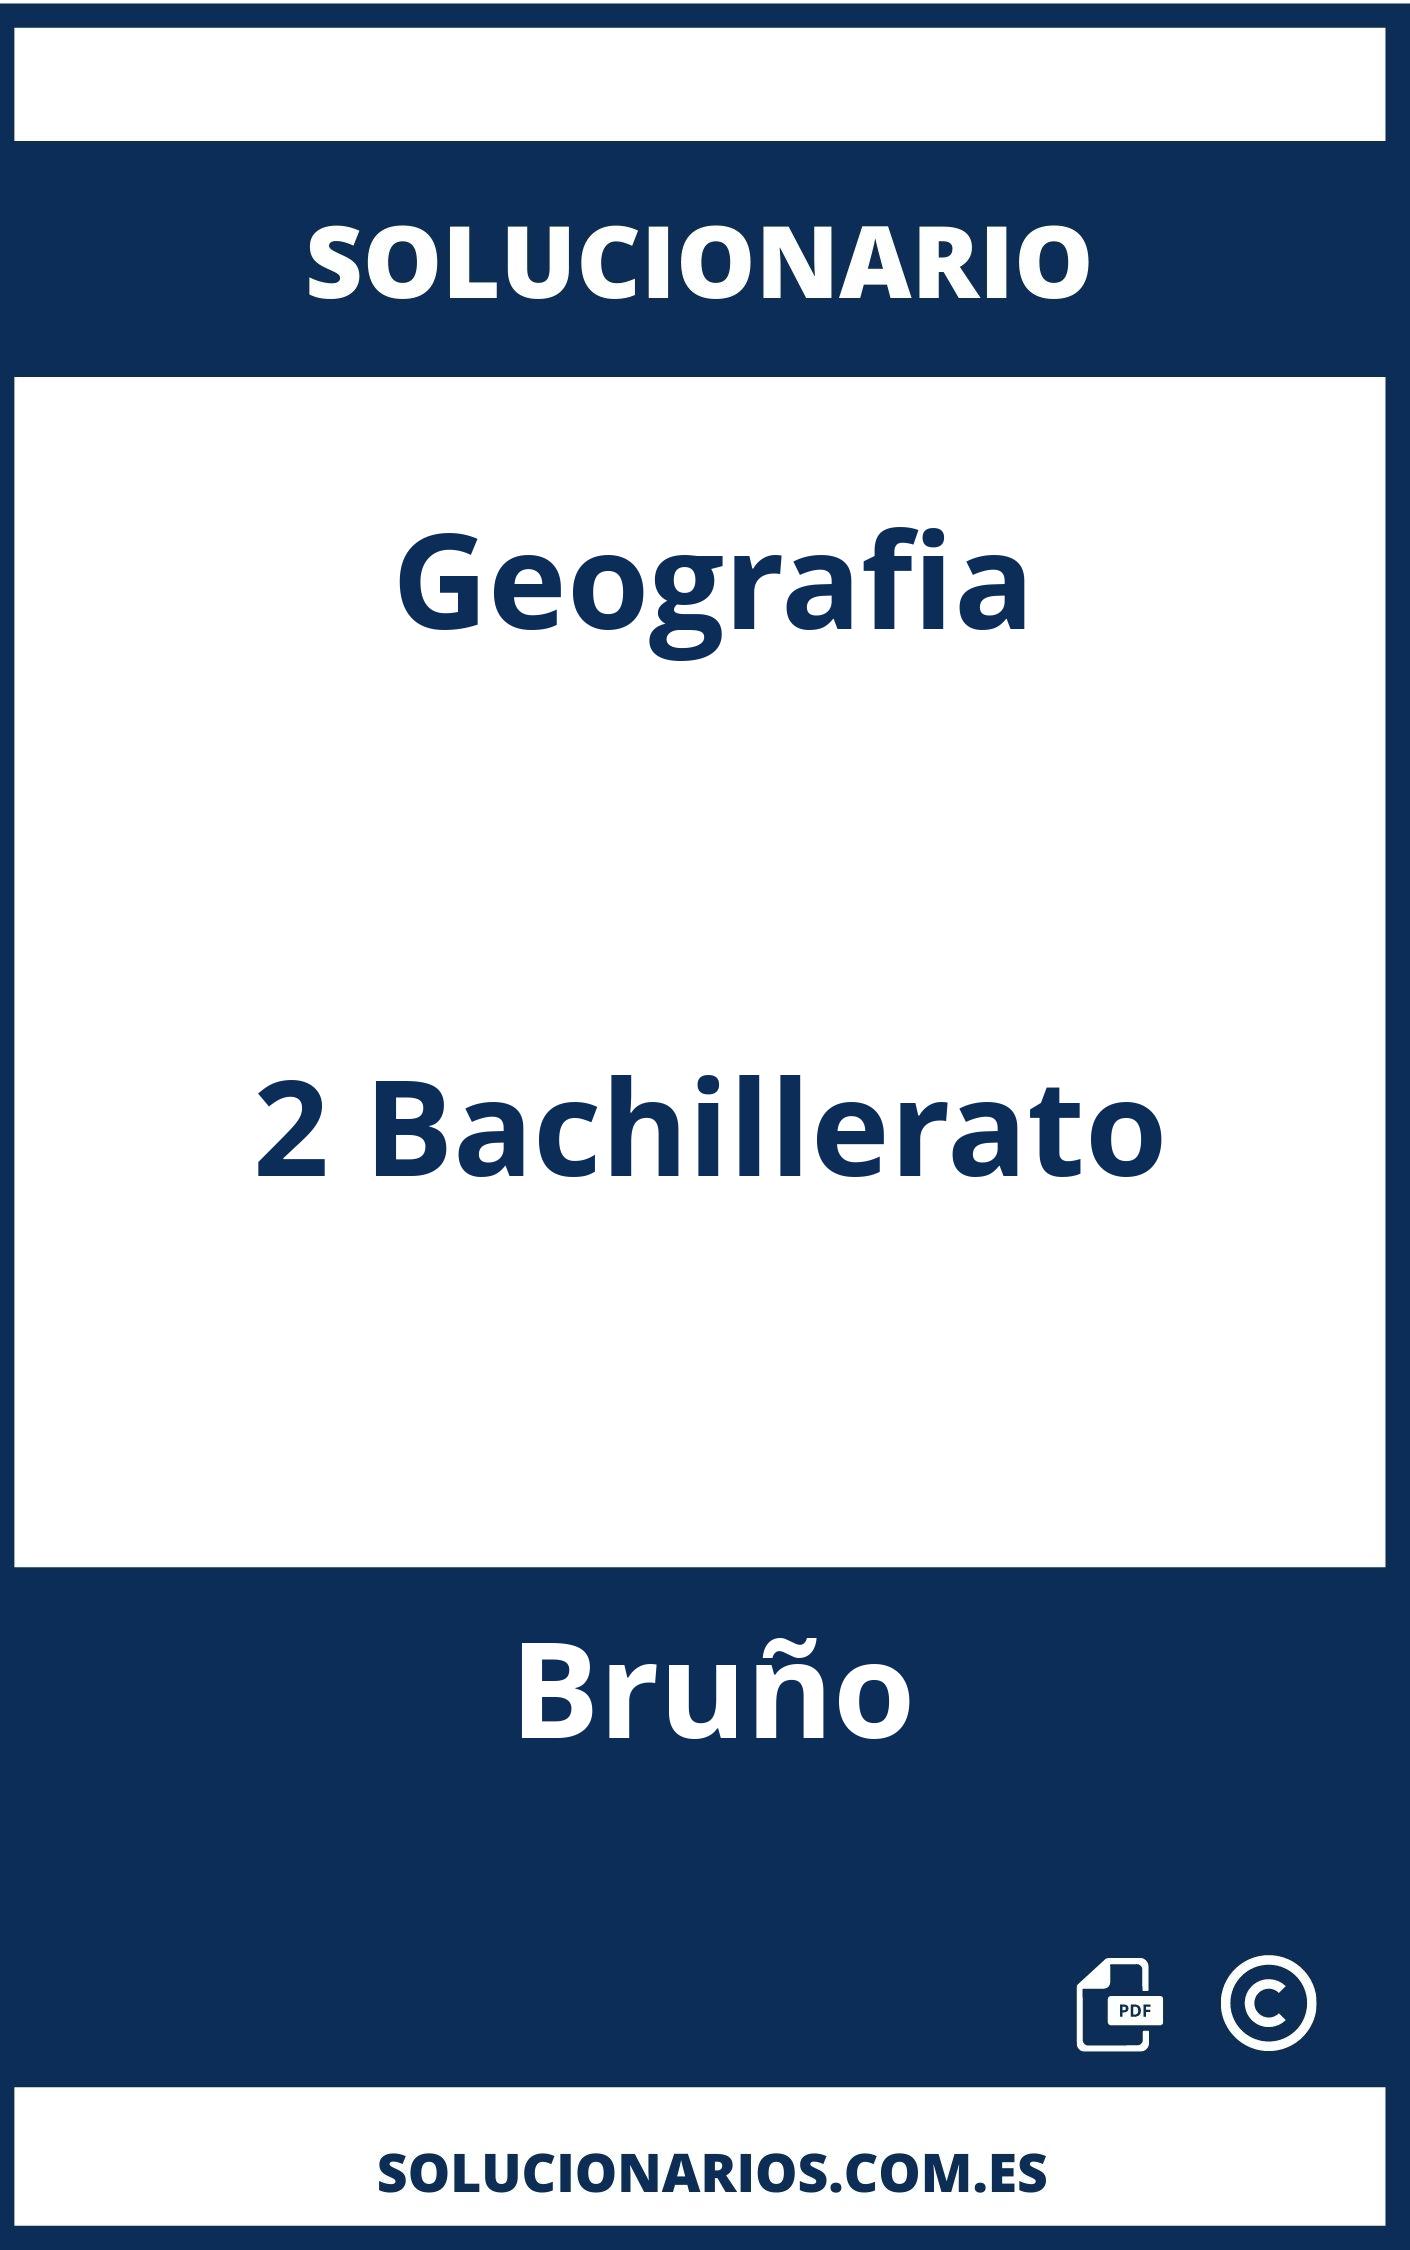 Solucionario Geografia 2 Bachillerato Bruño